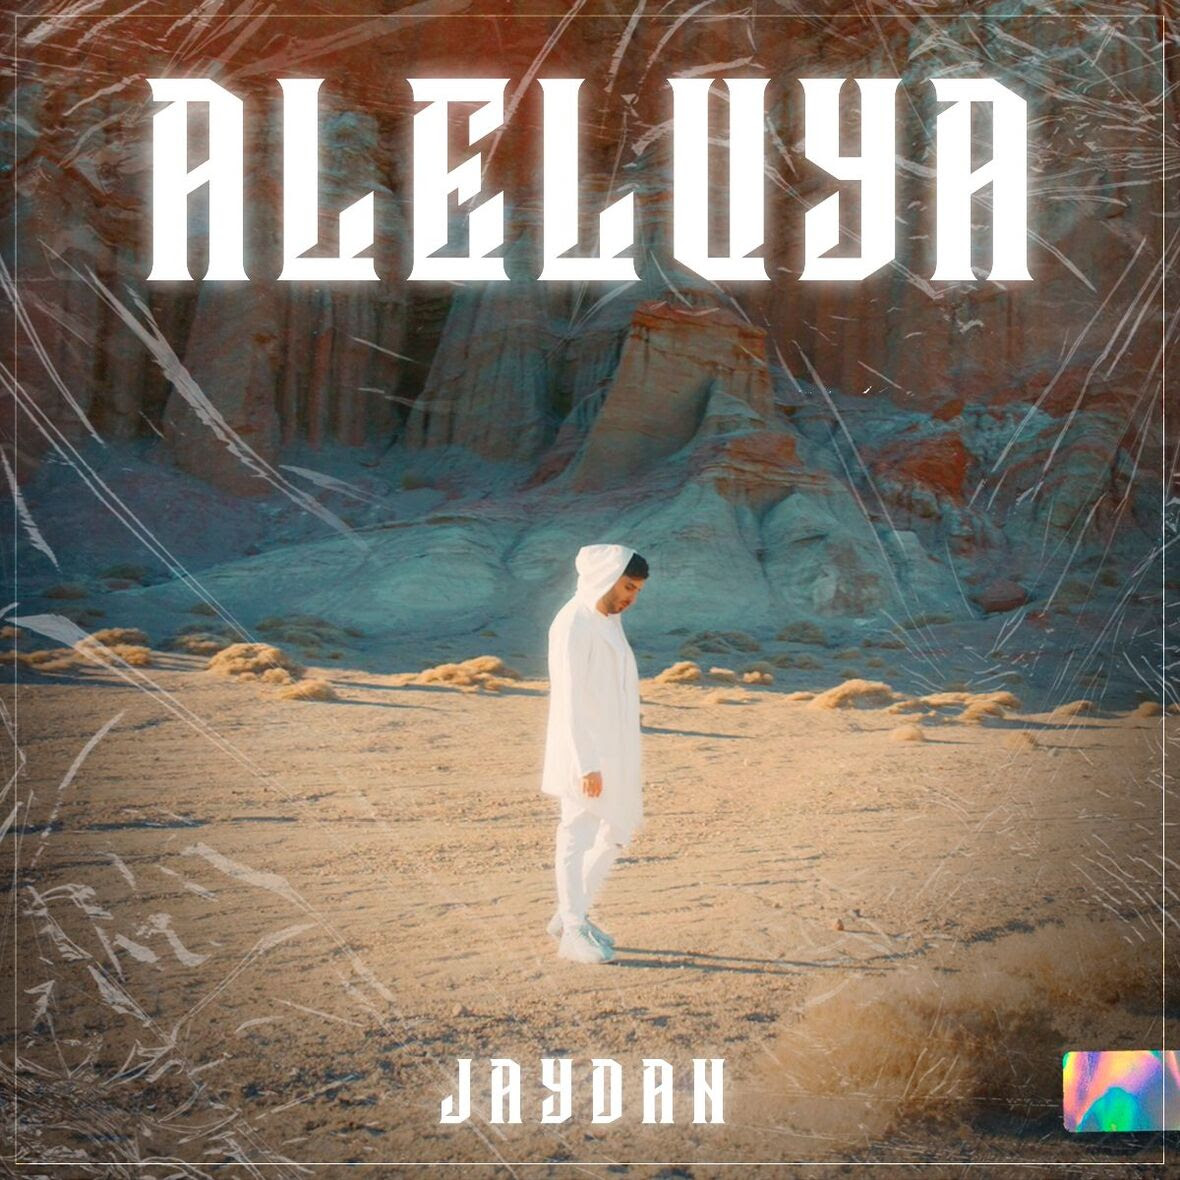 Jaydan lanza contagioso nuevo sencillo y video oficial “Aleluya”